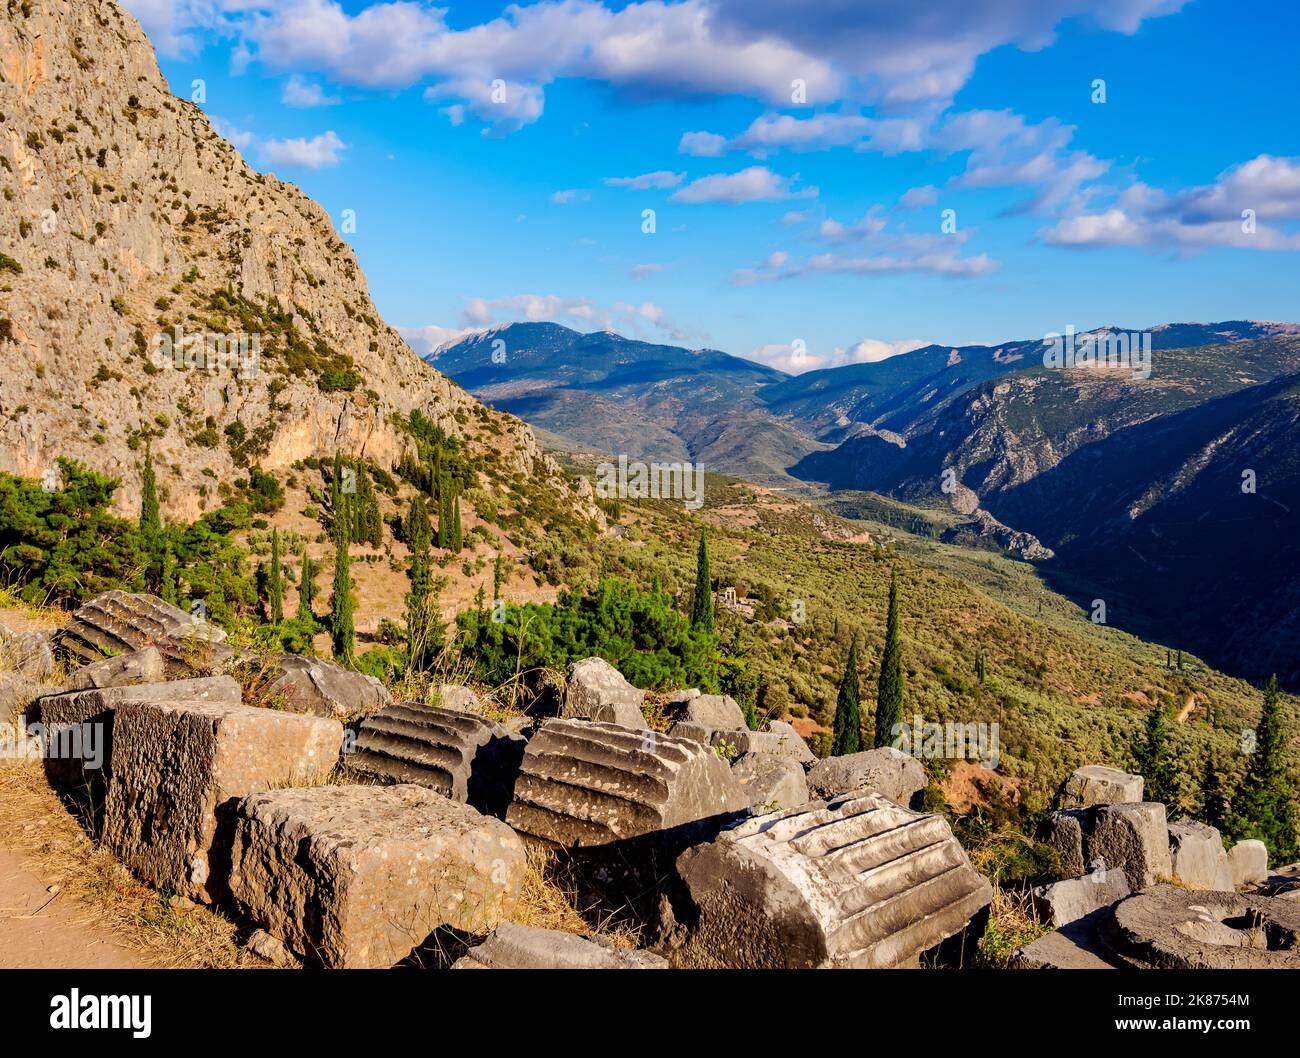 Sito archeologico di Delfi, valle del fiume Pleistos, Delfi, patrimonio dell'umanità dell'UNESCO, Phocis, Grecia, Europa Foto Stock